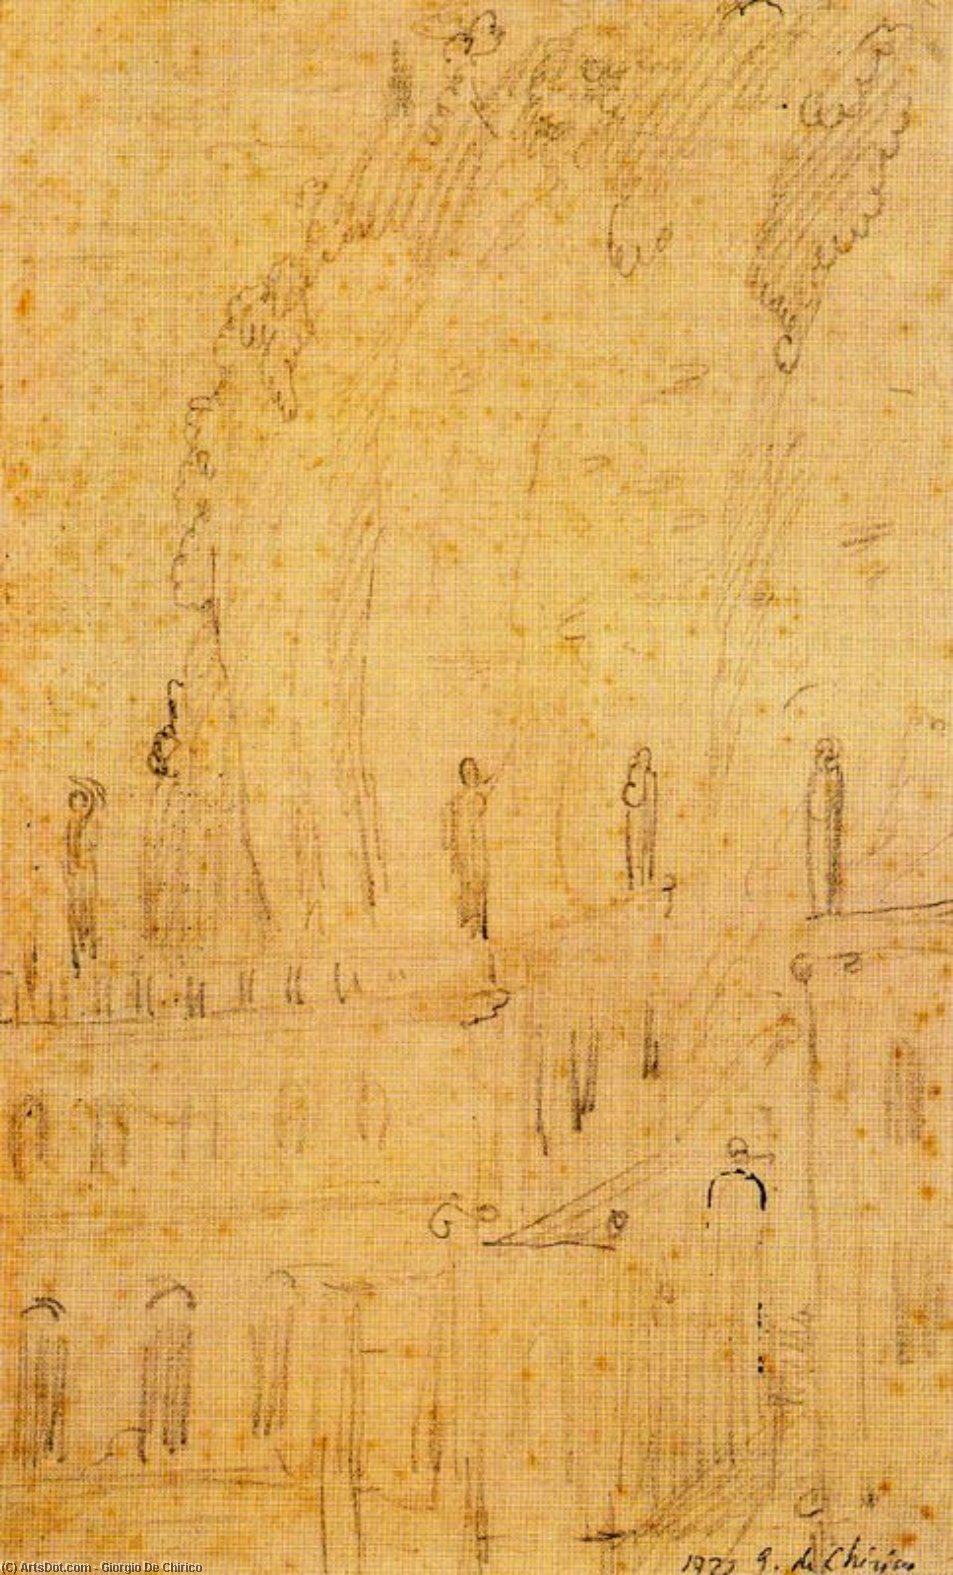 WikiOO.org - Encyclopedia of Fine Arts - Maleri, Artwork Giorgio De Chirico - The Roman villa